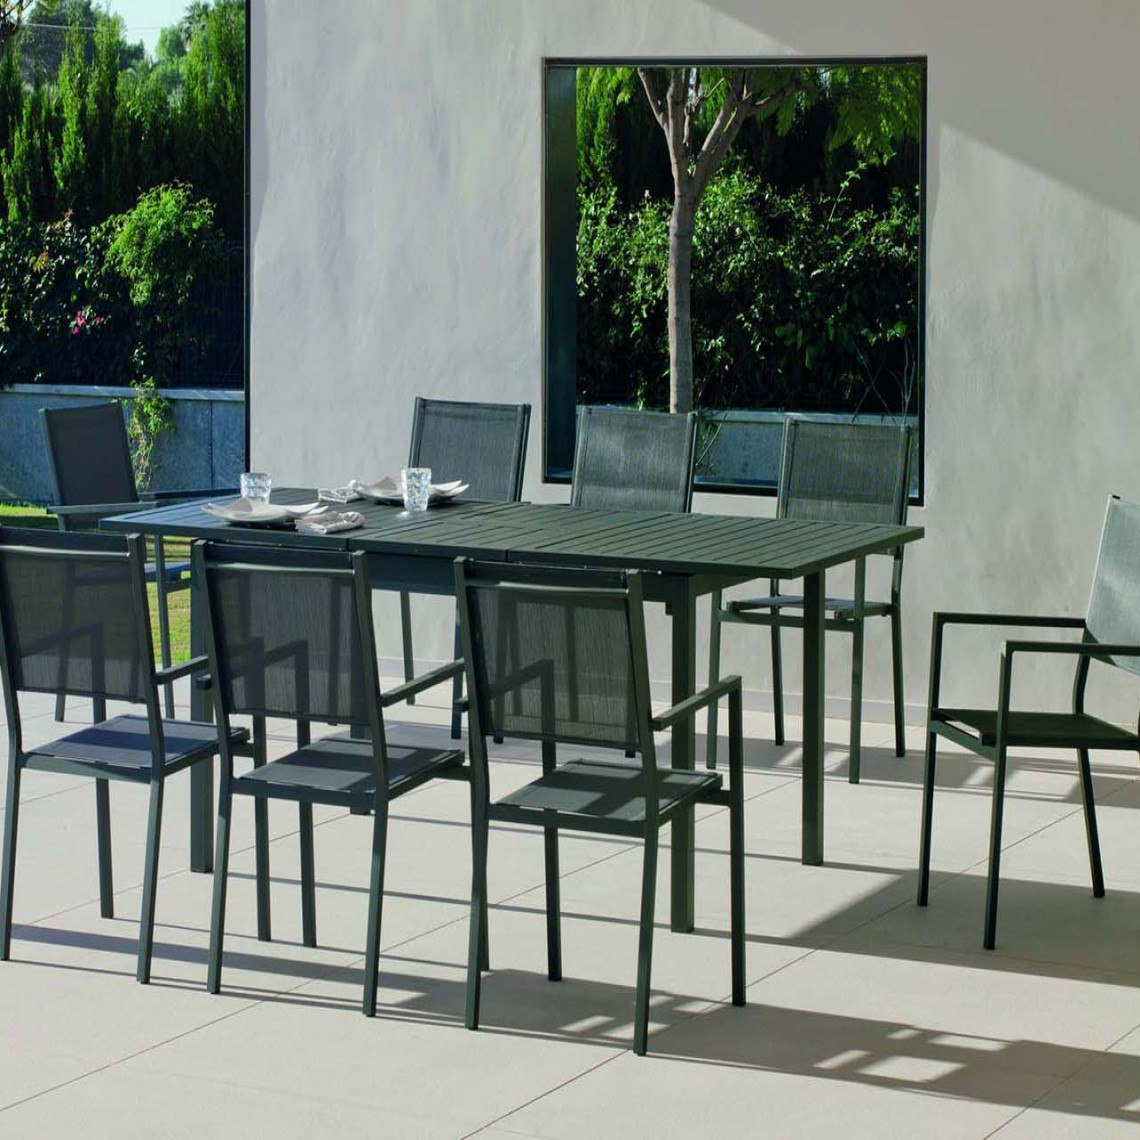 Hevea - Salon de jardin en aluminium 8 personnes Palma roma - Ensembles tables et chaises